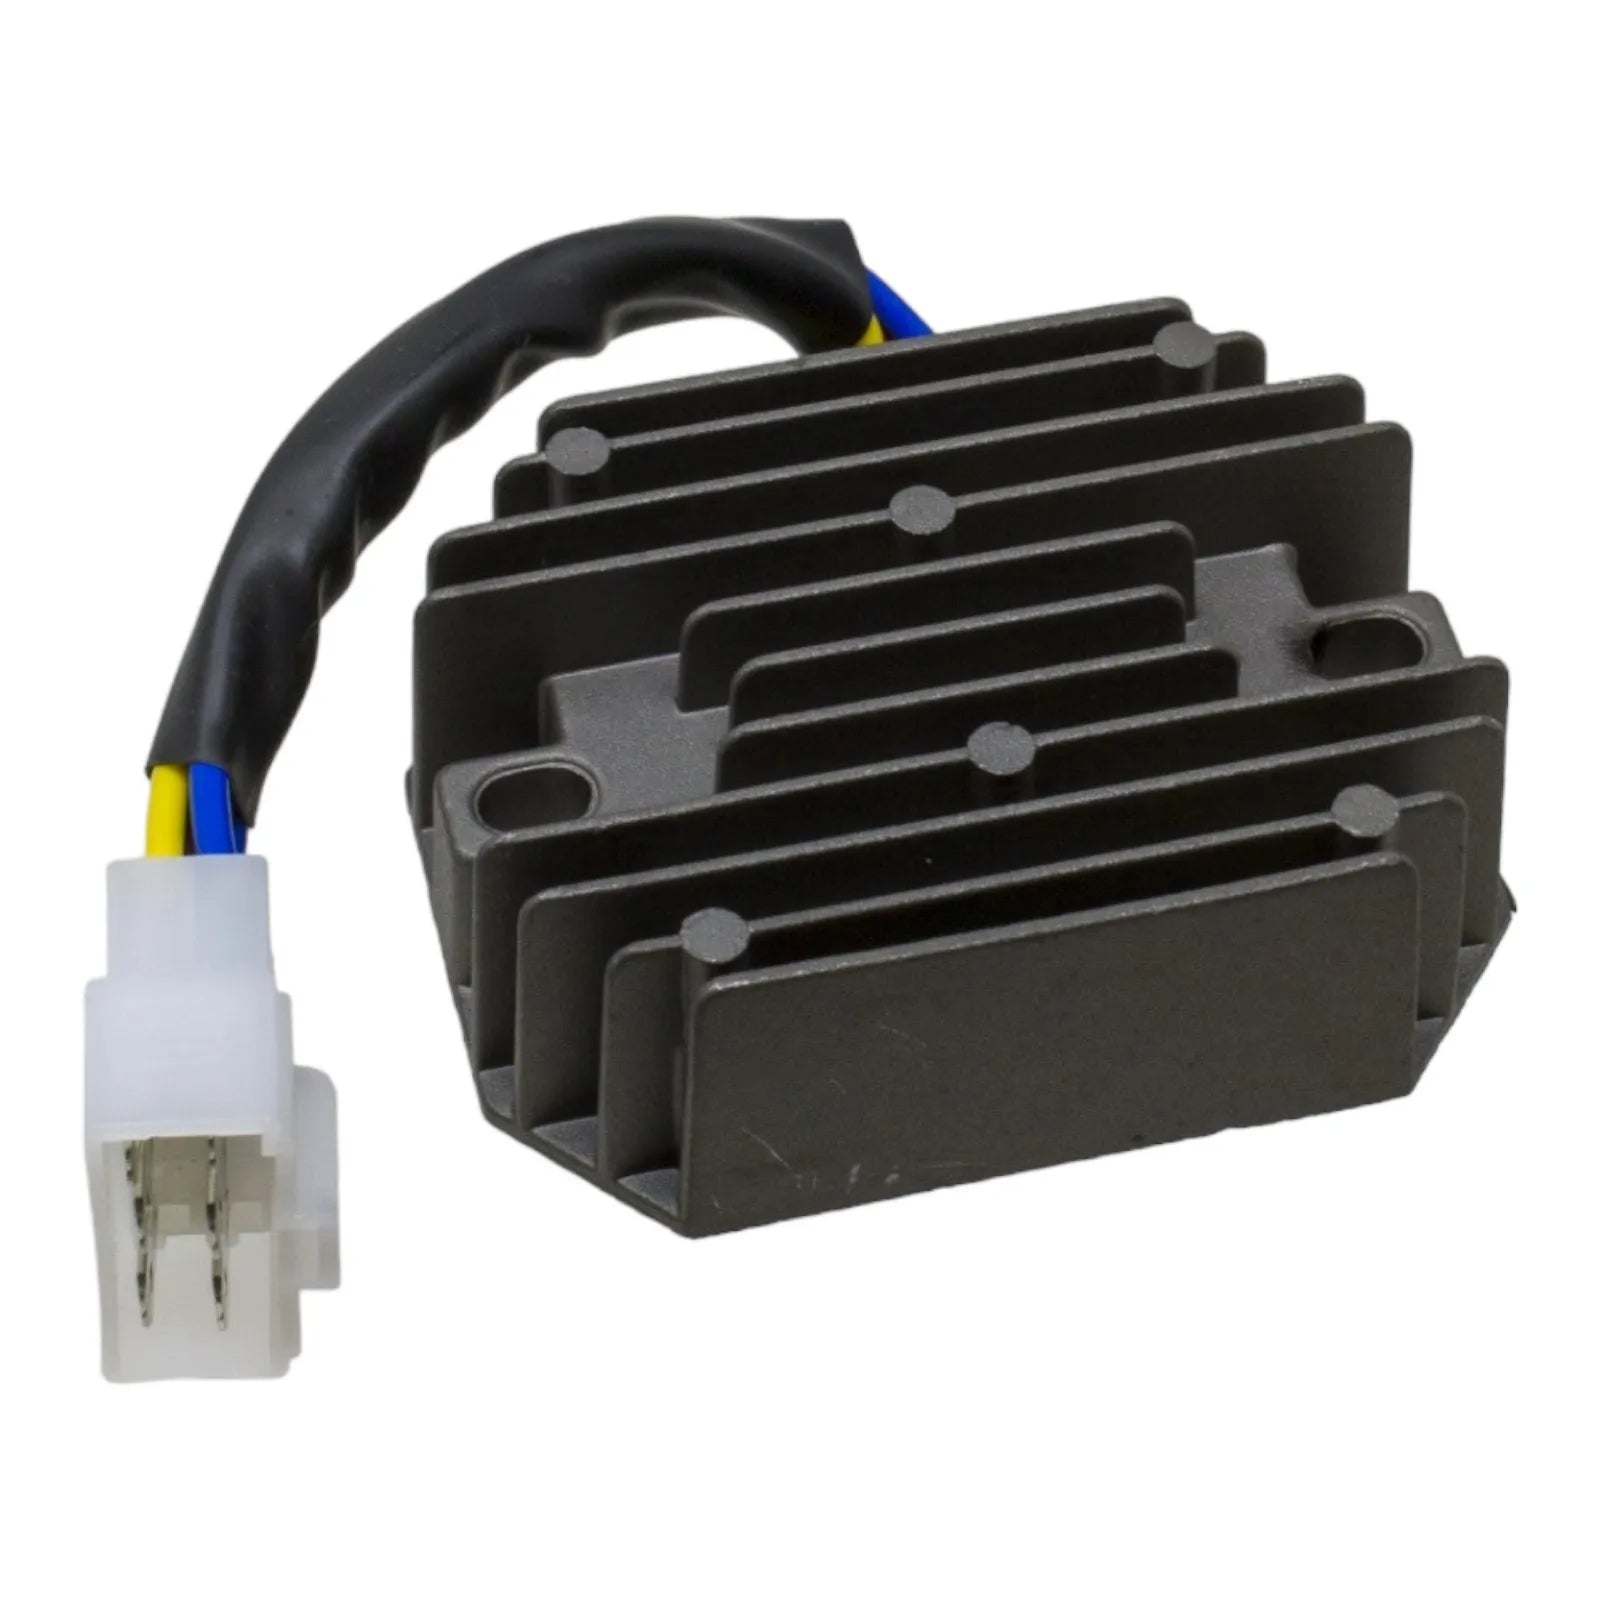 Duraforce 185516060, Voltage Regulator (6 Wire Plug) For Perkins